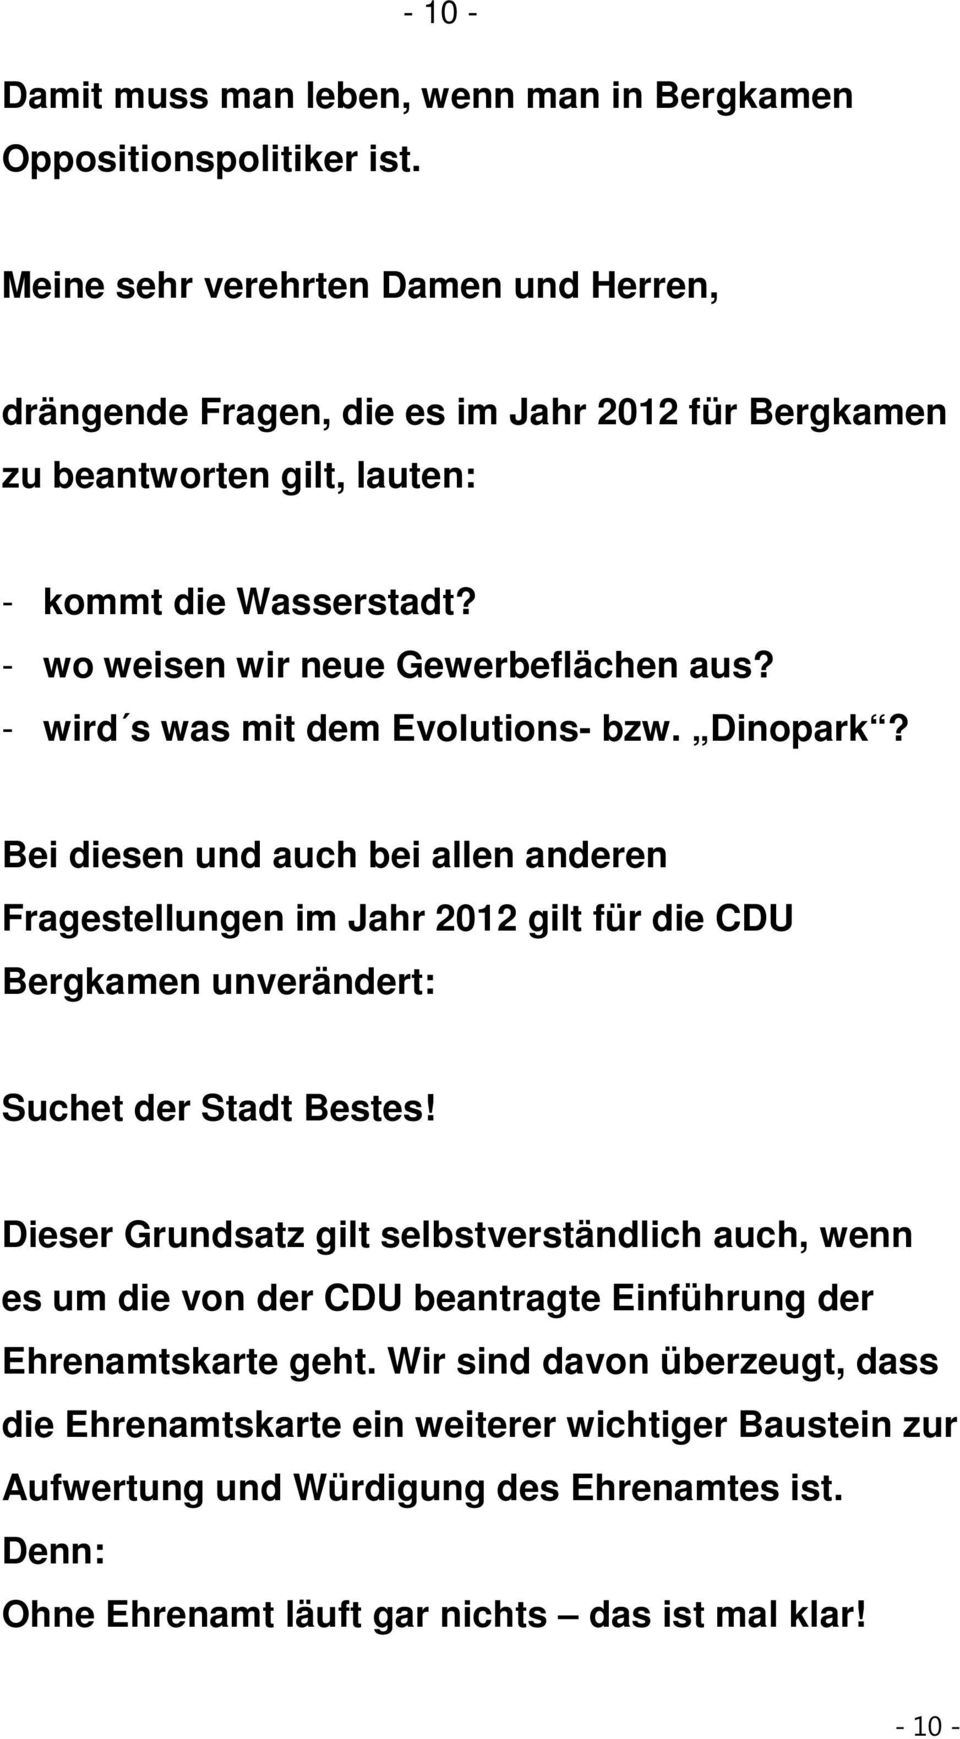 - wird s was mit dem Evolutions- bzw. Dinopark? Bei diesen und auch bei allen anderen Fragestellungen im Jahr 2012 gilt für die CDU Bergkamen unverändert: Suchet der Stadt Bestes!